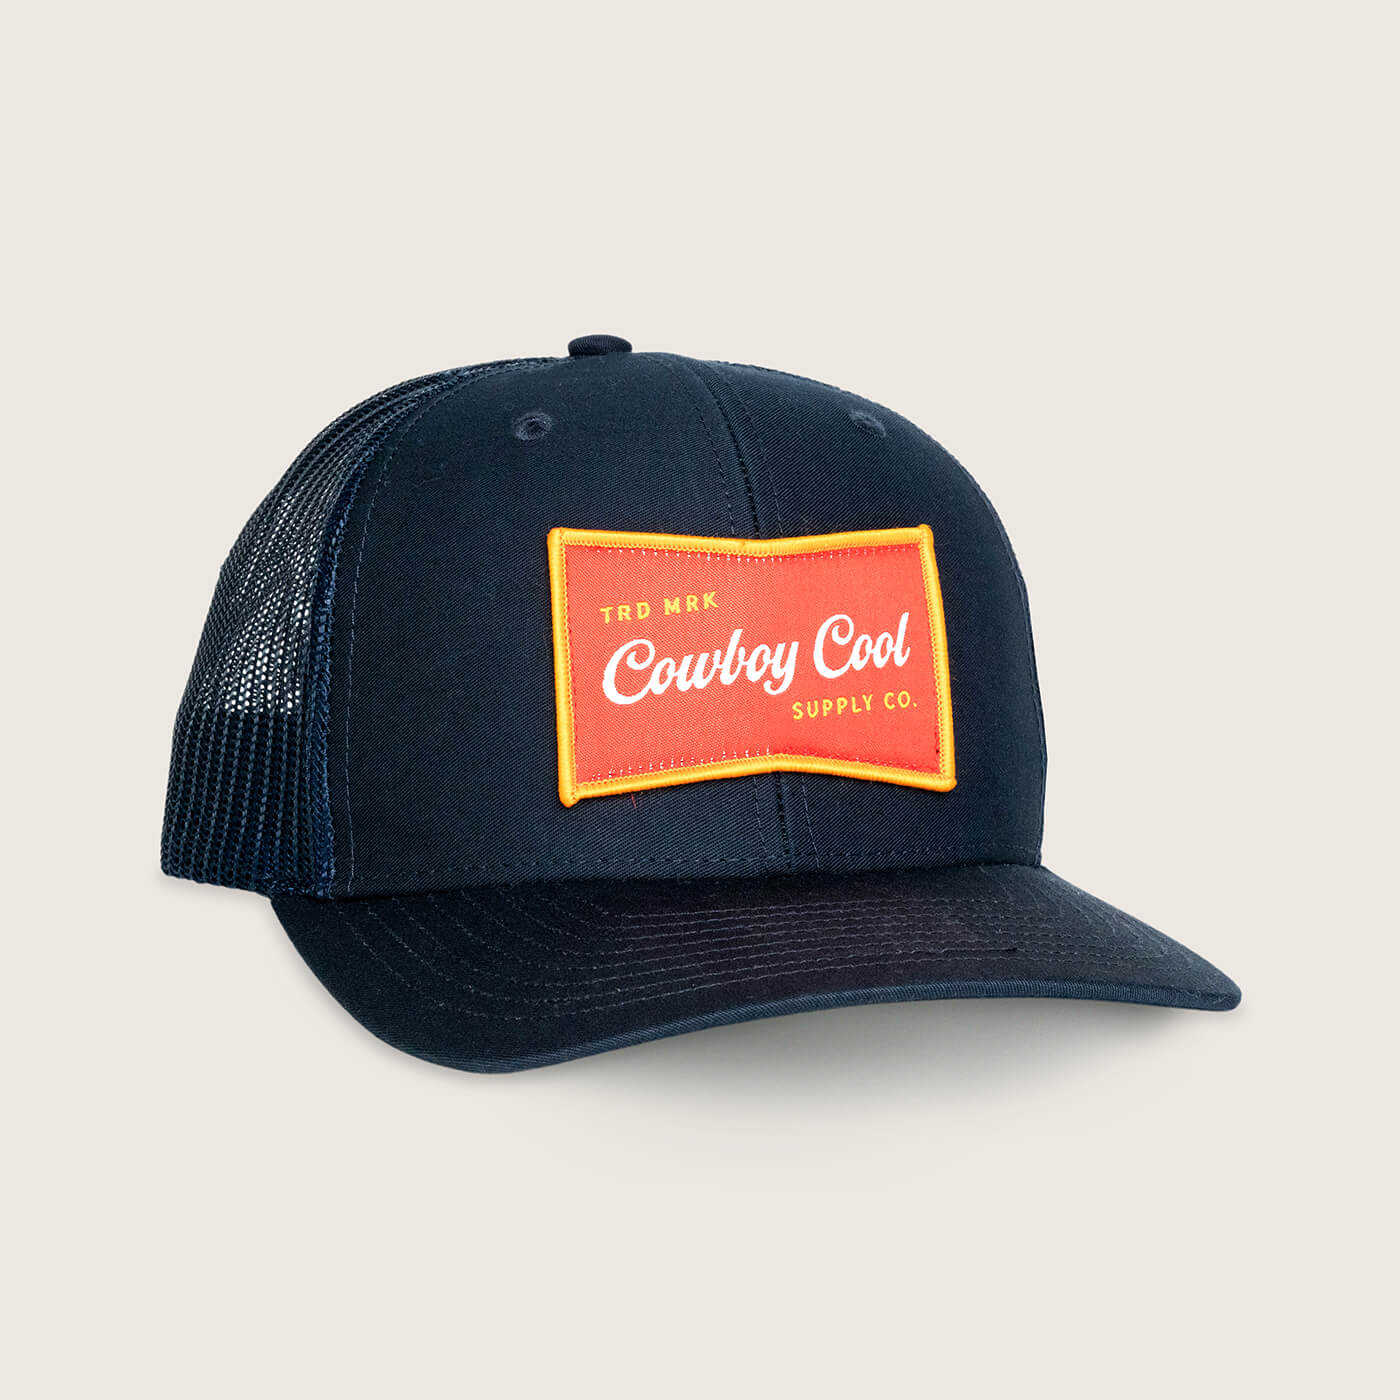 Cowboy Cool Banquet Cap